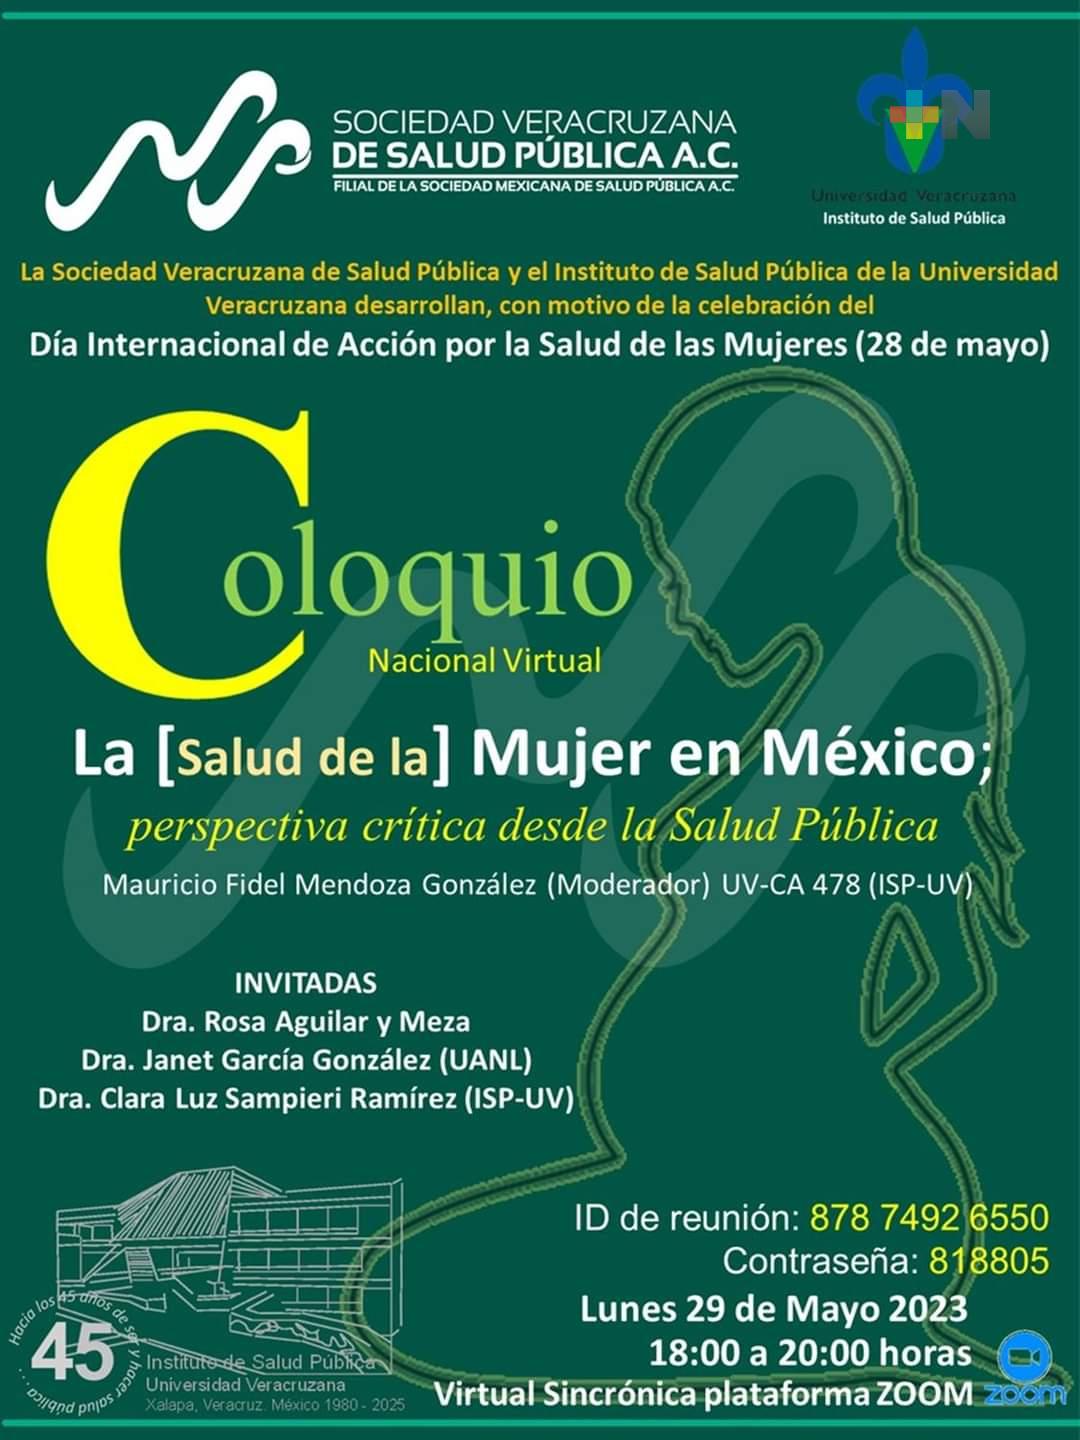 Realizan coloquio en línea sobre la salud de la Mujer en México